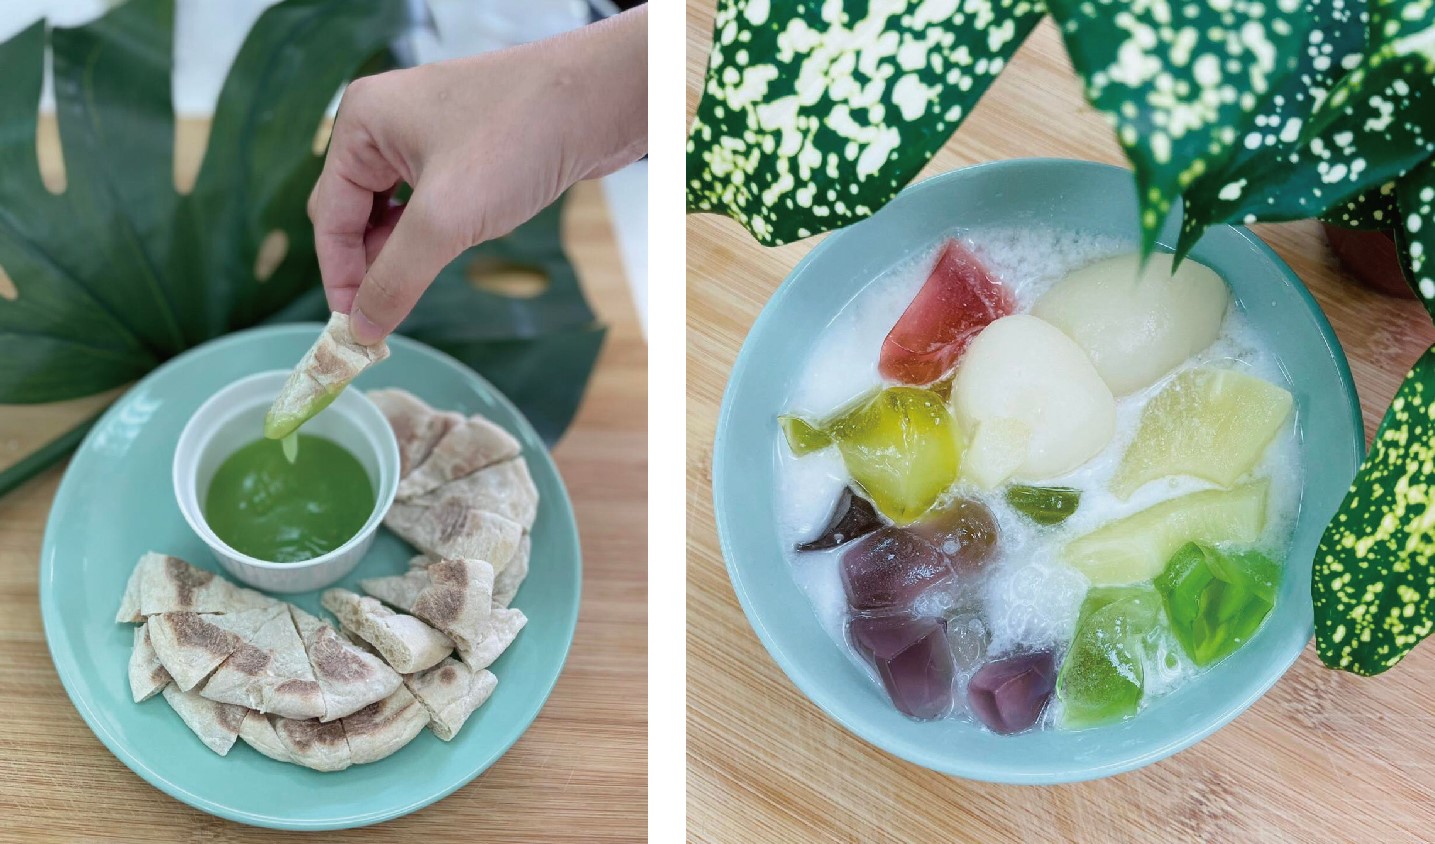 Tham gia khóa học, cô Trần Thu Ngâm đã nấu hai món đó là “彩虹奶奶” (Sữa cầu vồng) và “水潤爺爺” (Thủy nhuận gia gia). (Nguồn ảnh: Nhân vật cung cấp)